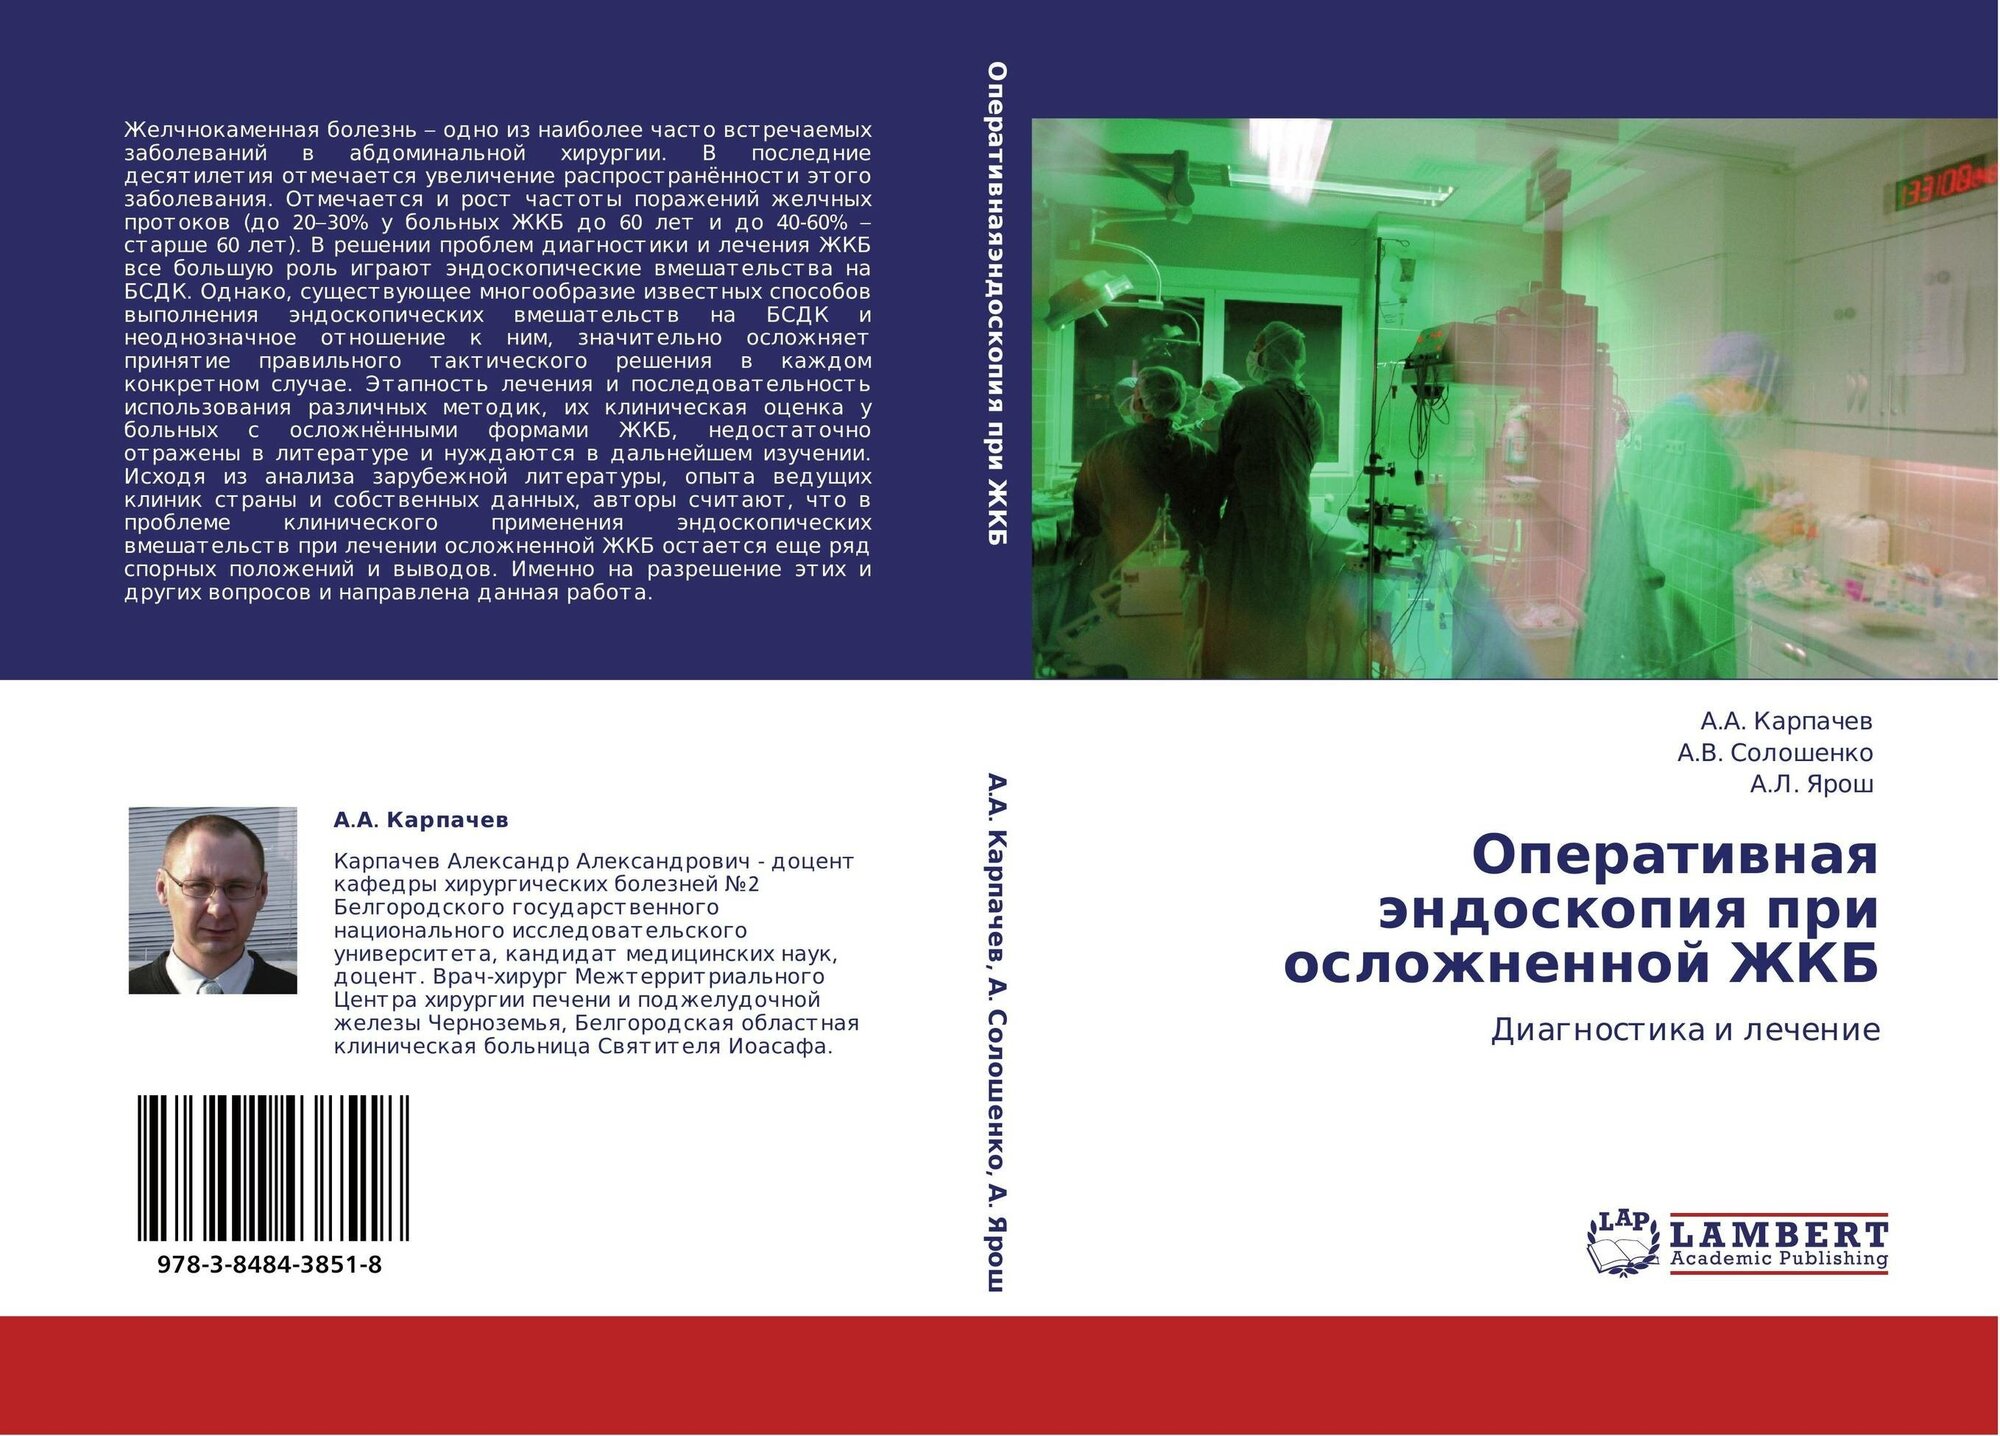 А. А. Карпачев, А. В. Солошенко, А. Л. Ярош "Оперативная эндоскопия при осложненной ЖКБ. Диагностика и лечение."